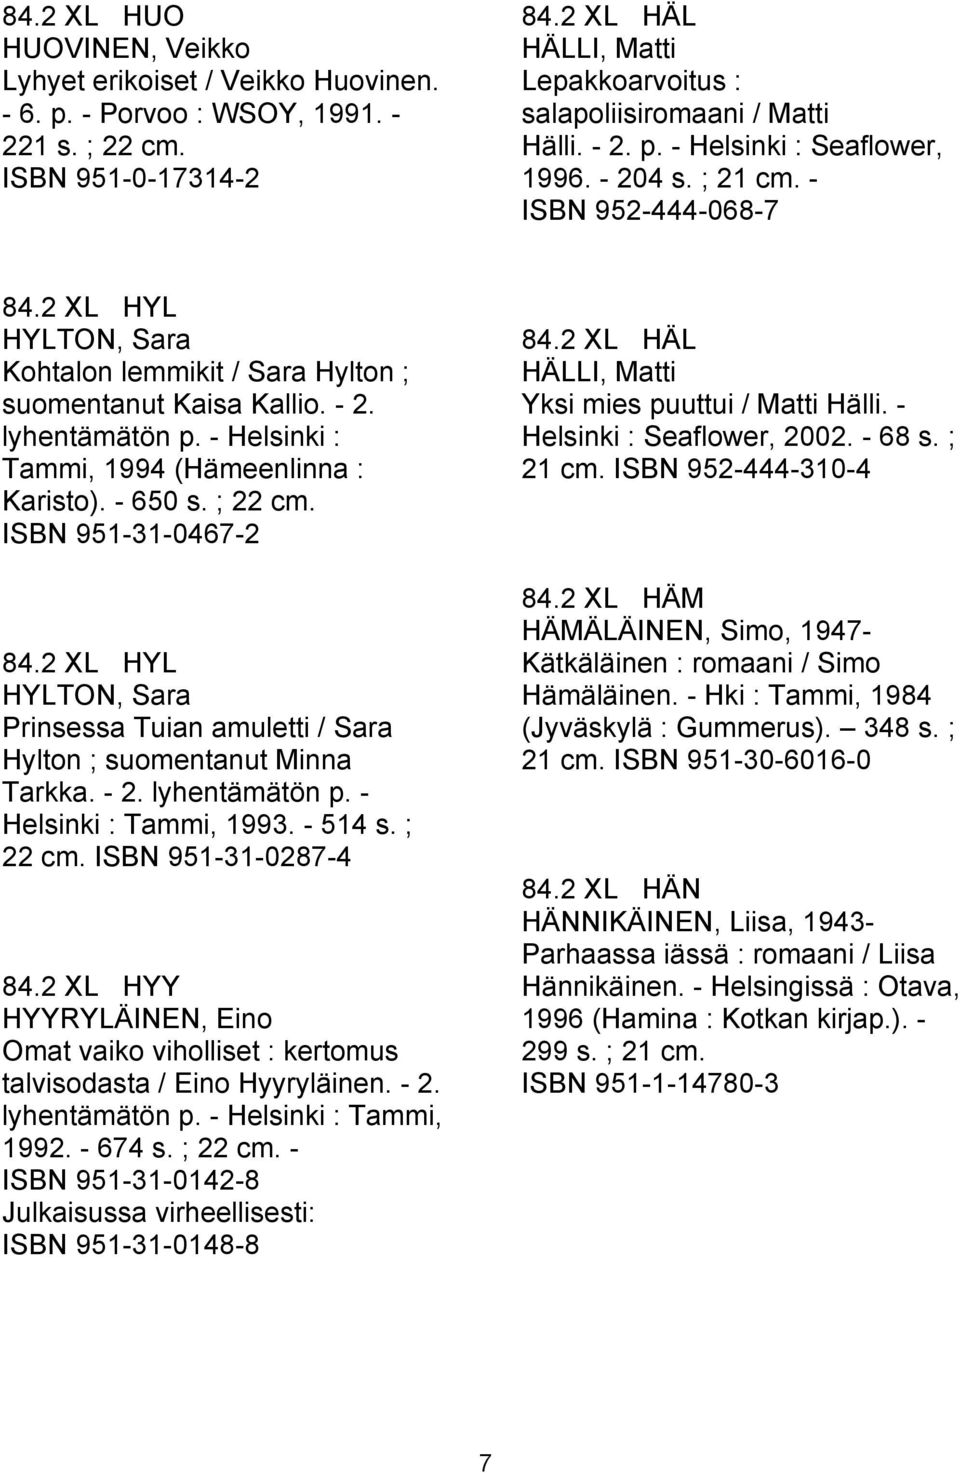 2 XL HYL HYLTON, Sara Kohtalon lemmikit / Sara Hylton ; suomentanut Kaisa Kallio. - 2. lyhentämätön p. - Helsinki : Tammi, 1994 (Hämeenlinna : Karisto). - 650 s. ; 22 cm. ISBN 951-31-0467-2 84.